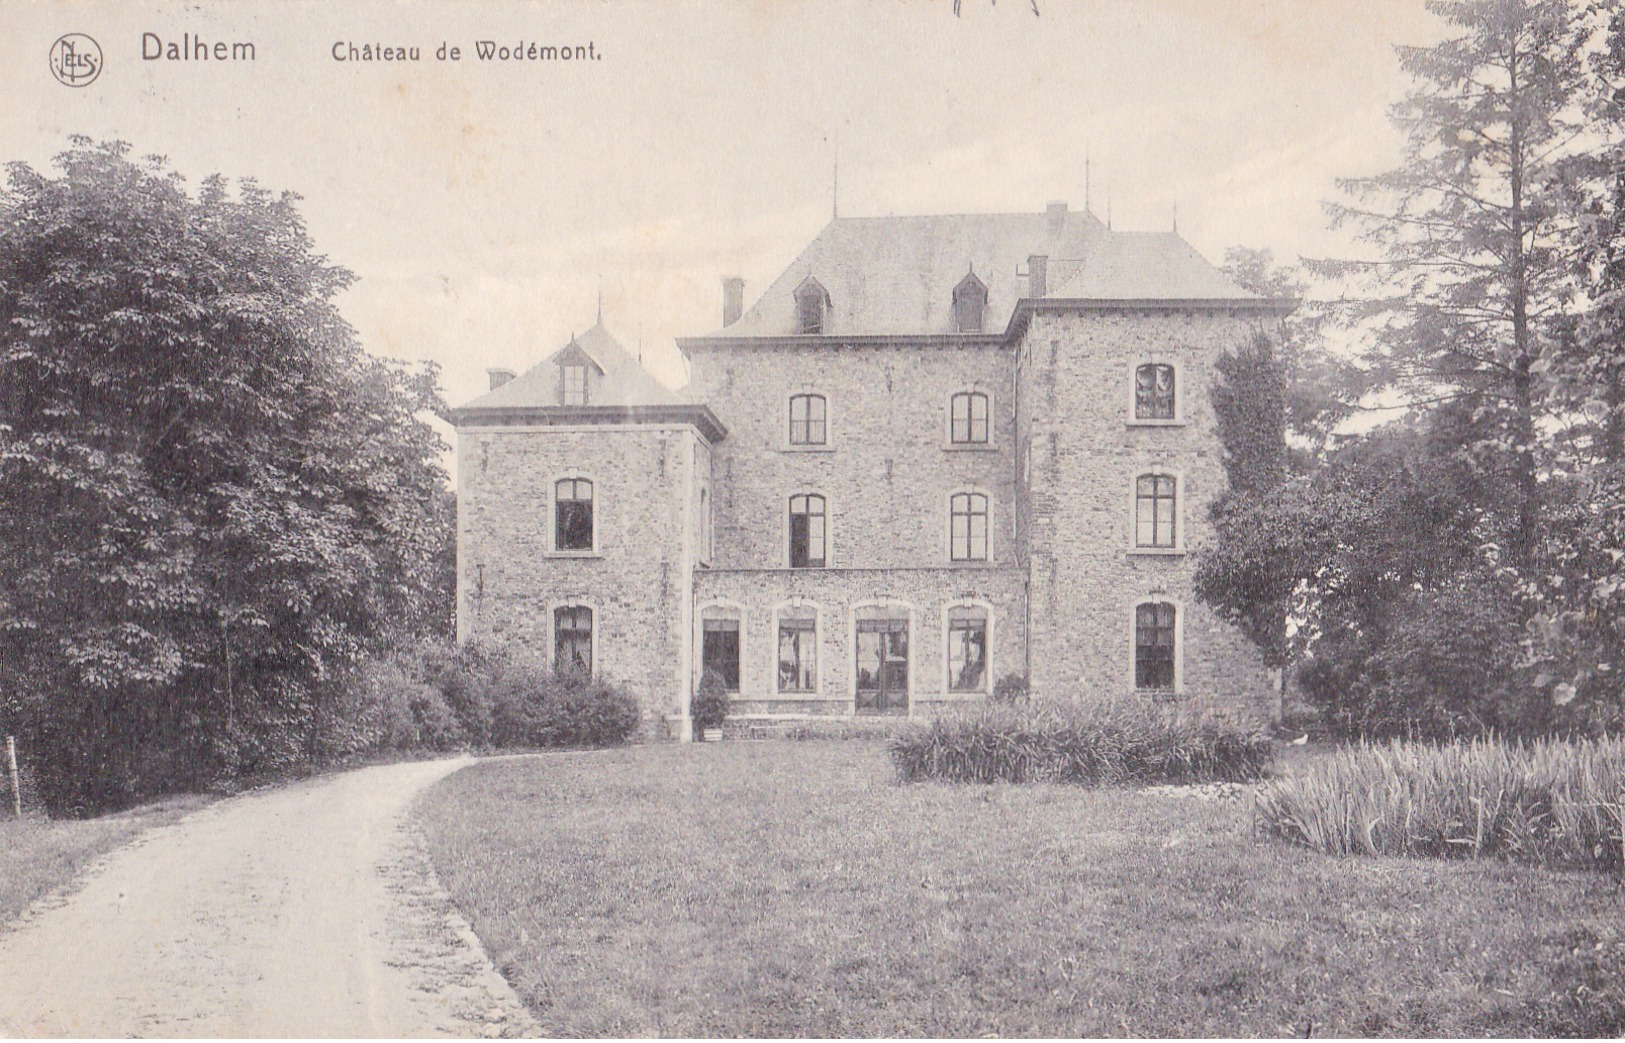 Dalhem: Château De Wodémont - Dalhem